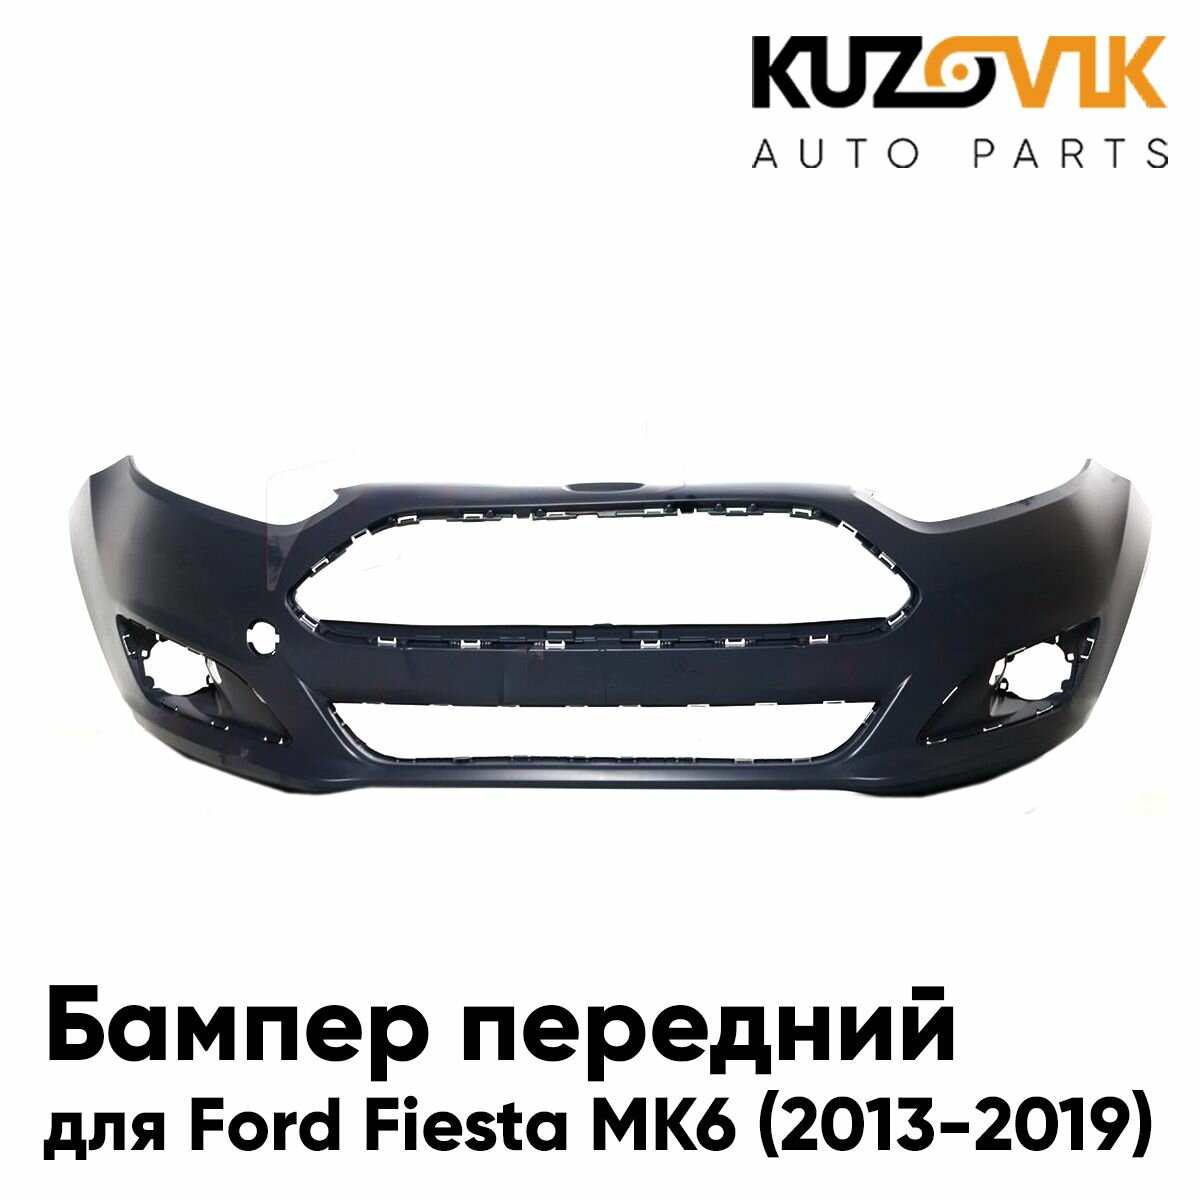 Бампер передний для Форд Фиеста Ford Fiesta MK6 (2013-2019) рестайлинг